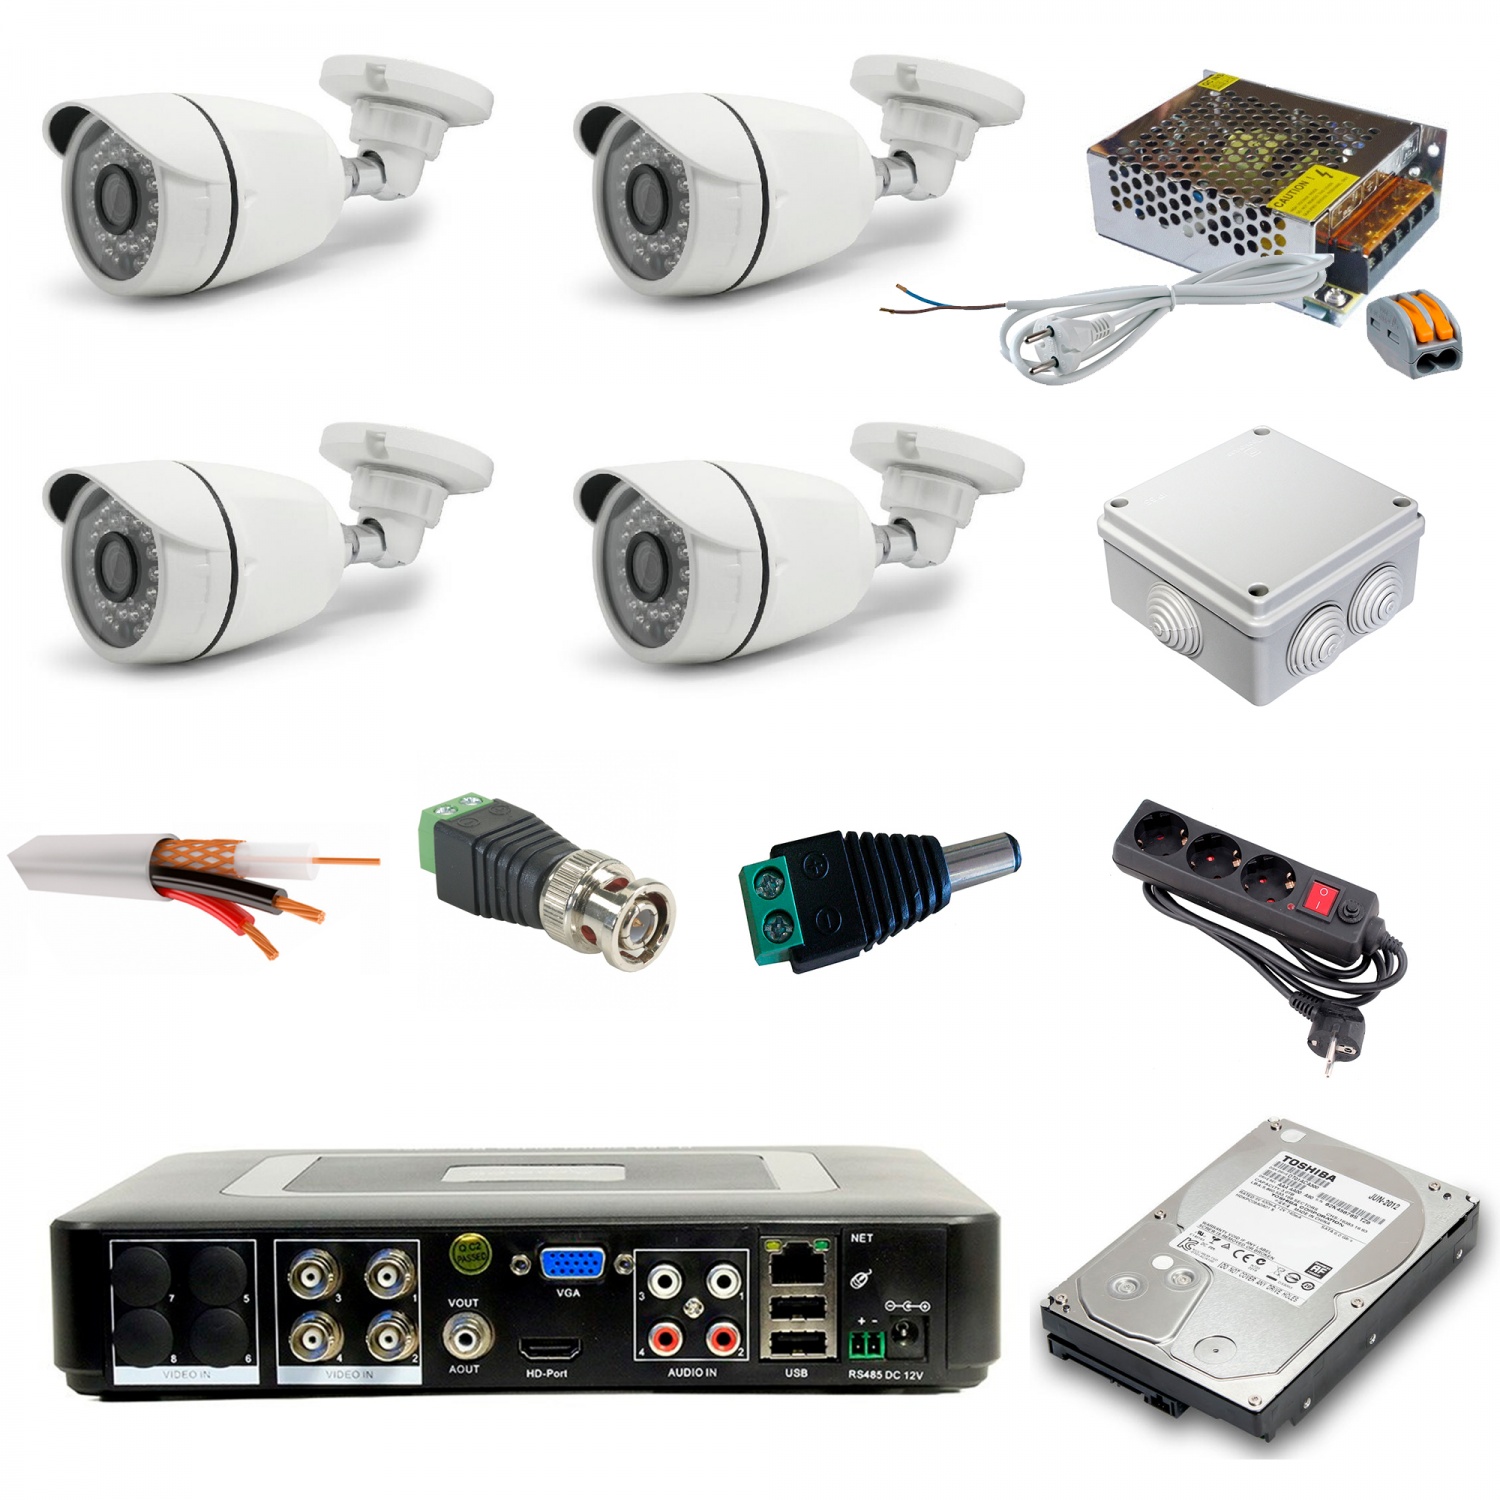 Системы видеонаблюдения делятся на два типа - аналоговые и цифровыеВидеокамеры - купольные, цилиндрические, микрокамеры, уличные